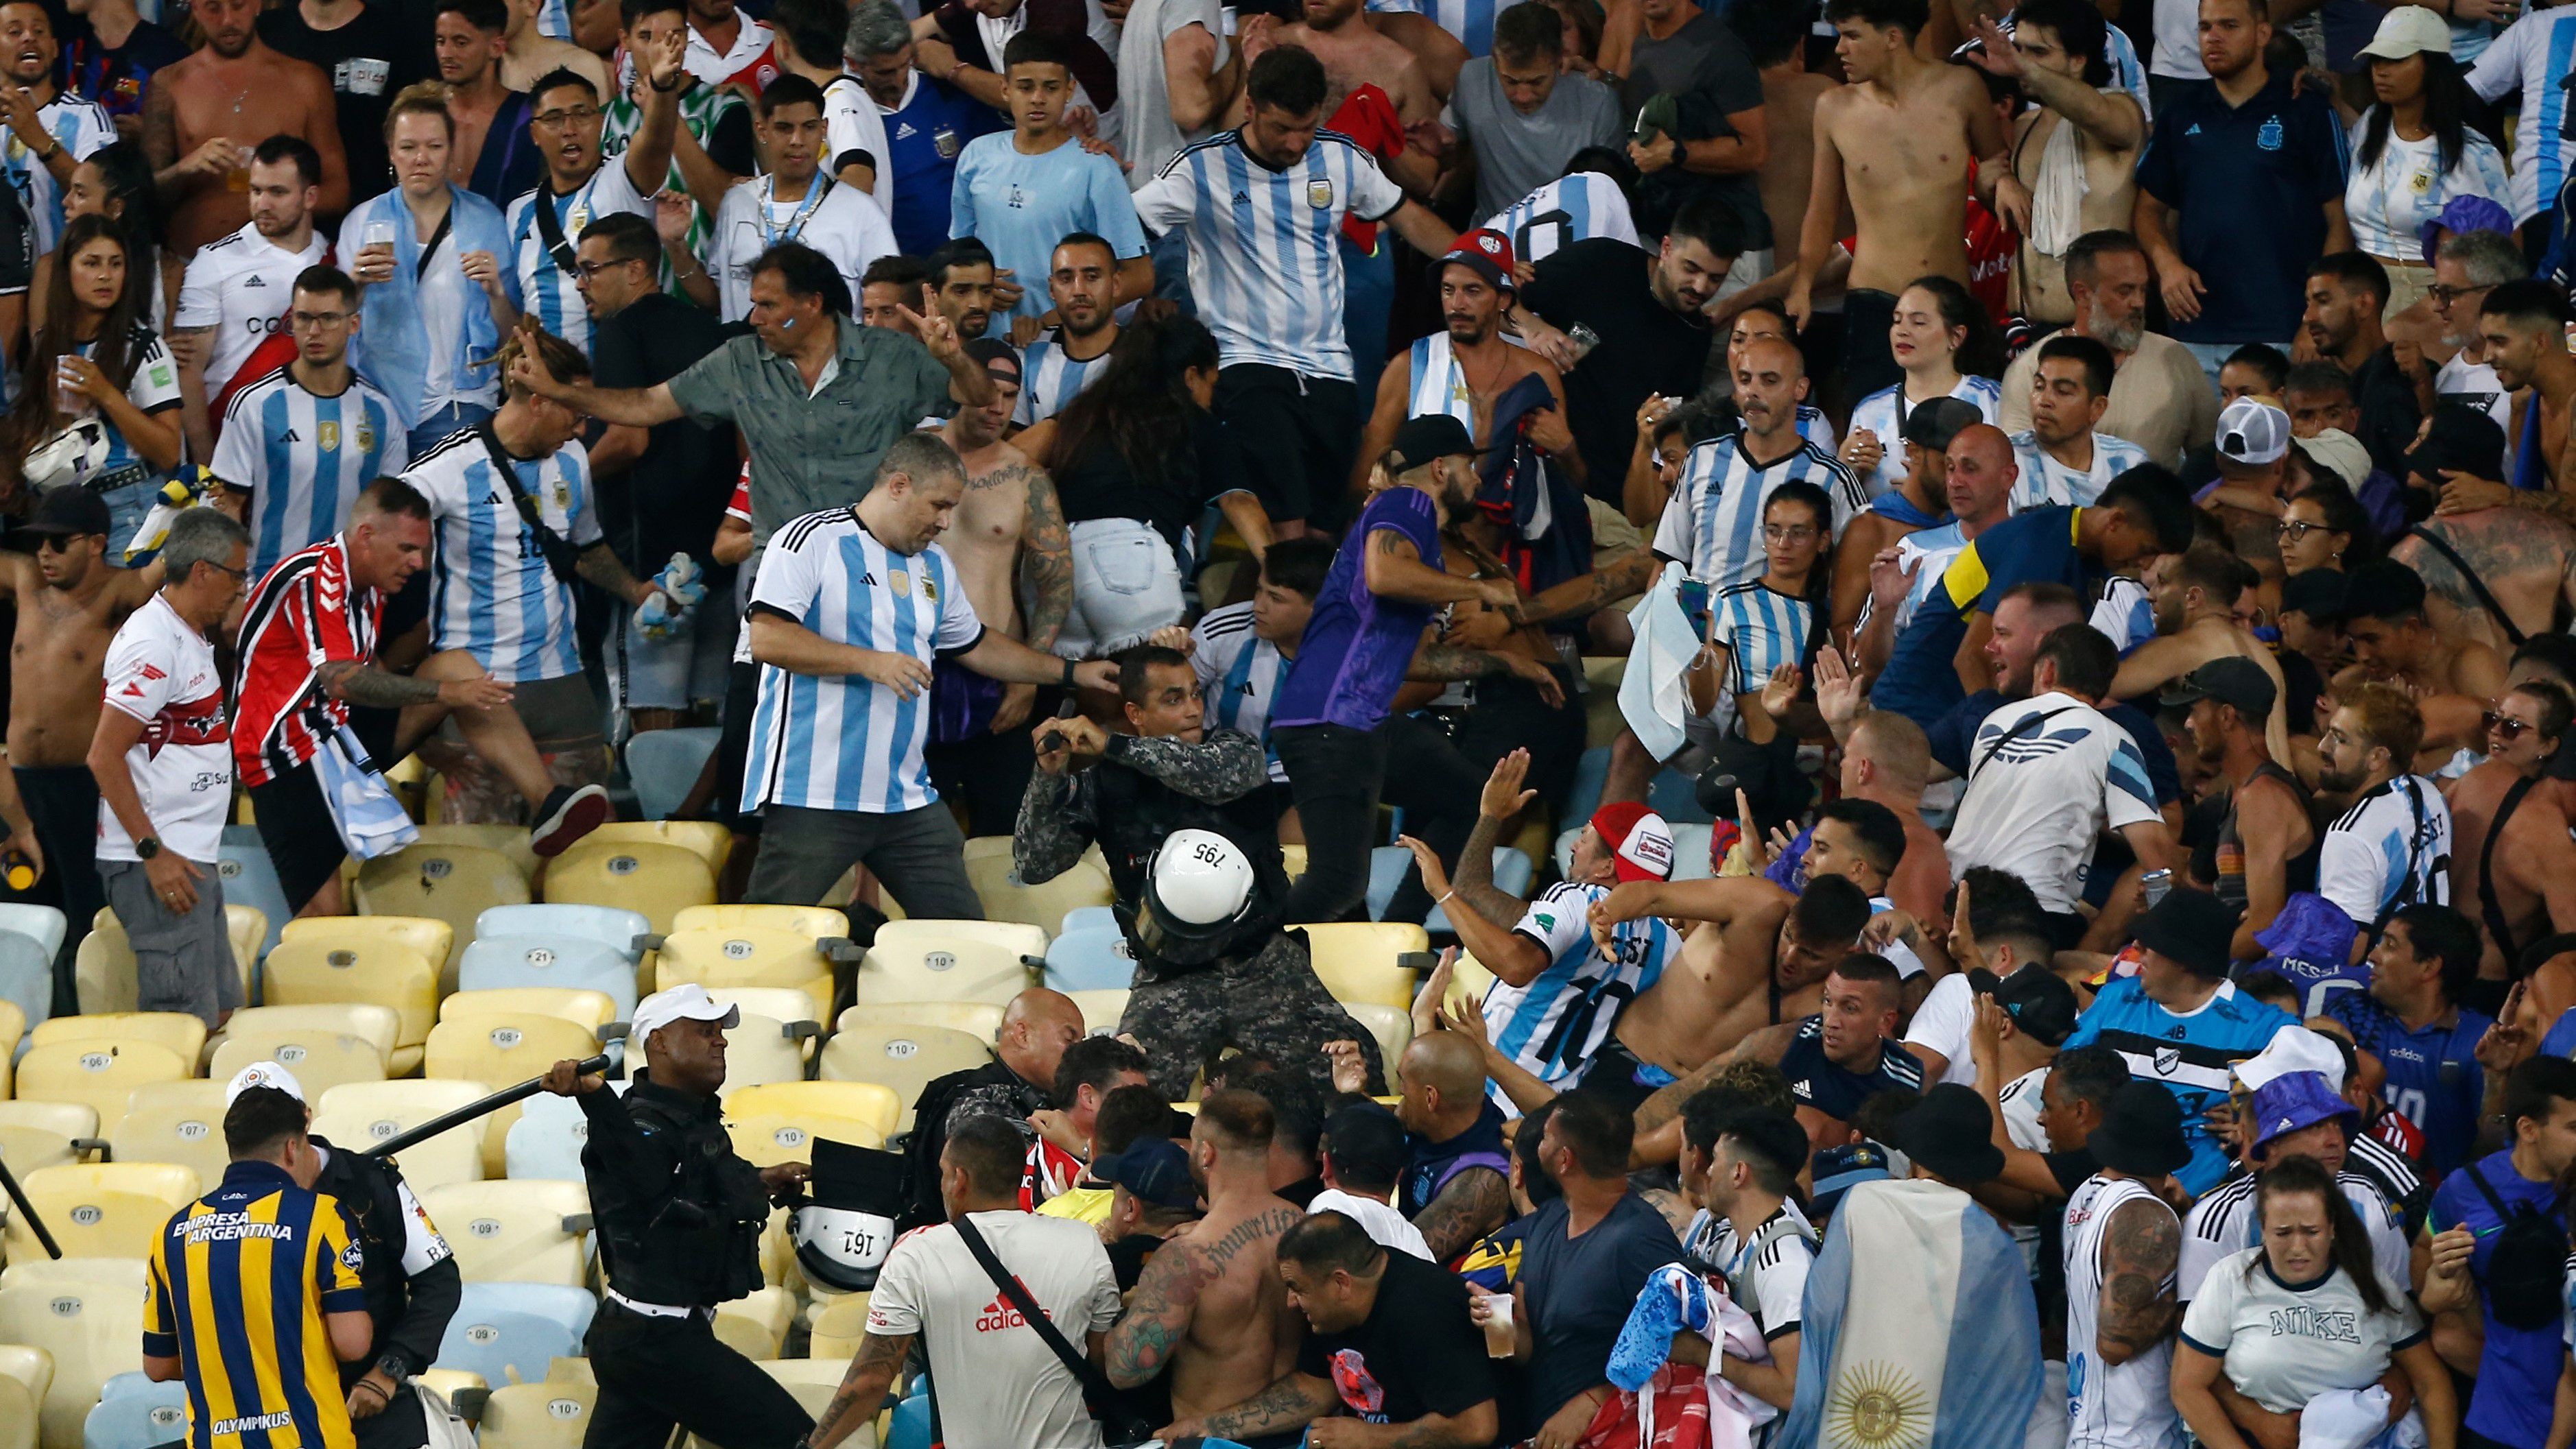 A brazil rendőrök akcióját nem nézték jó szemmel az argentin játékosok, egyesek közbe akartak avatkozni, majd az egész csapat levonult a pályáról. (Fotó: Getty Images)